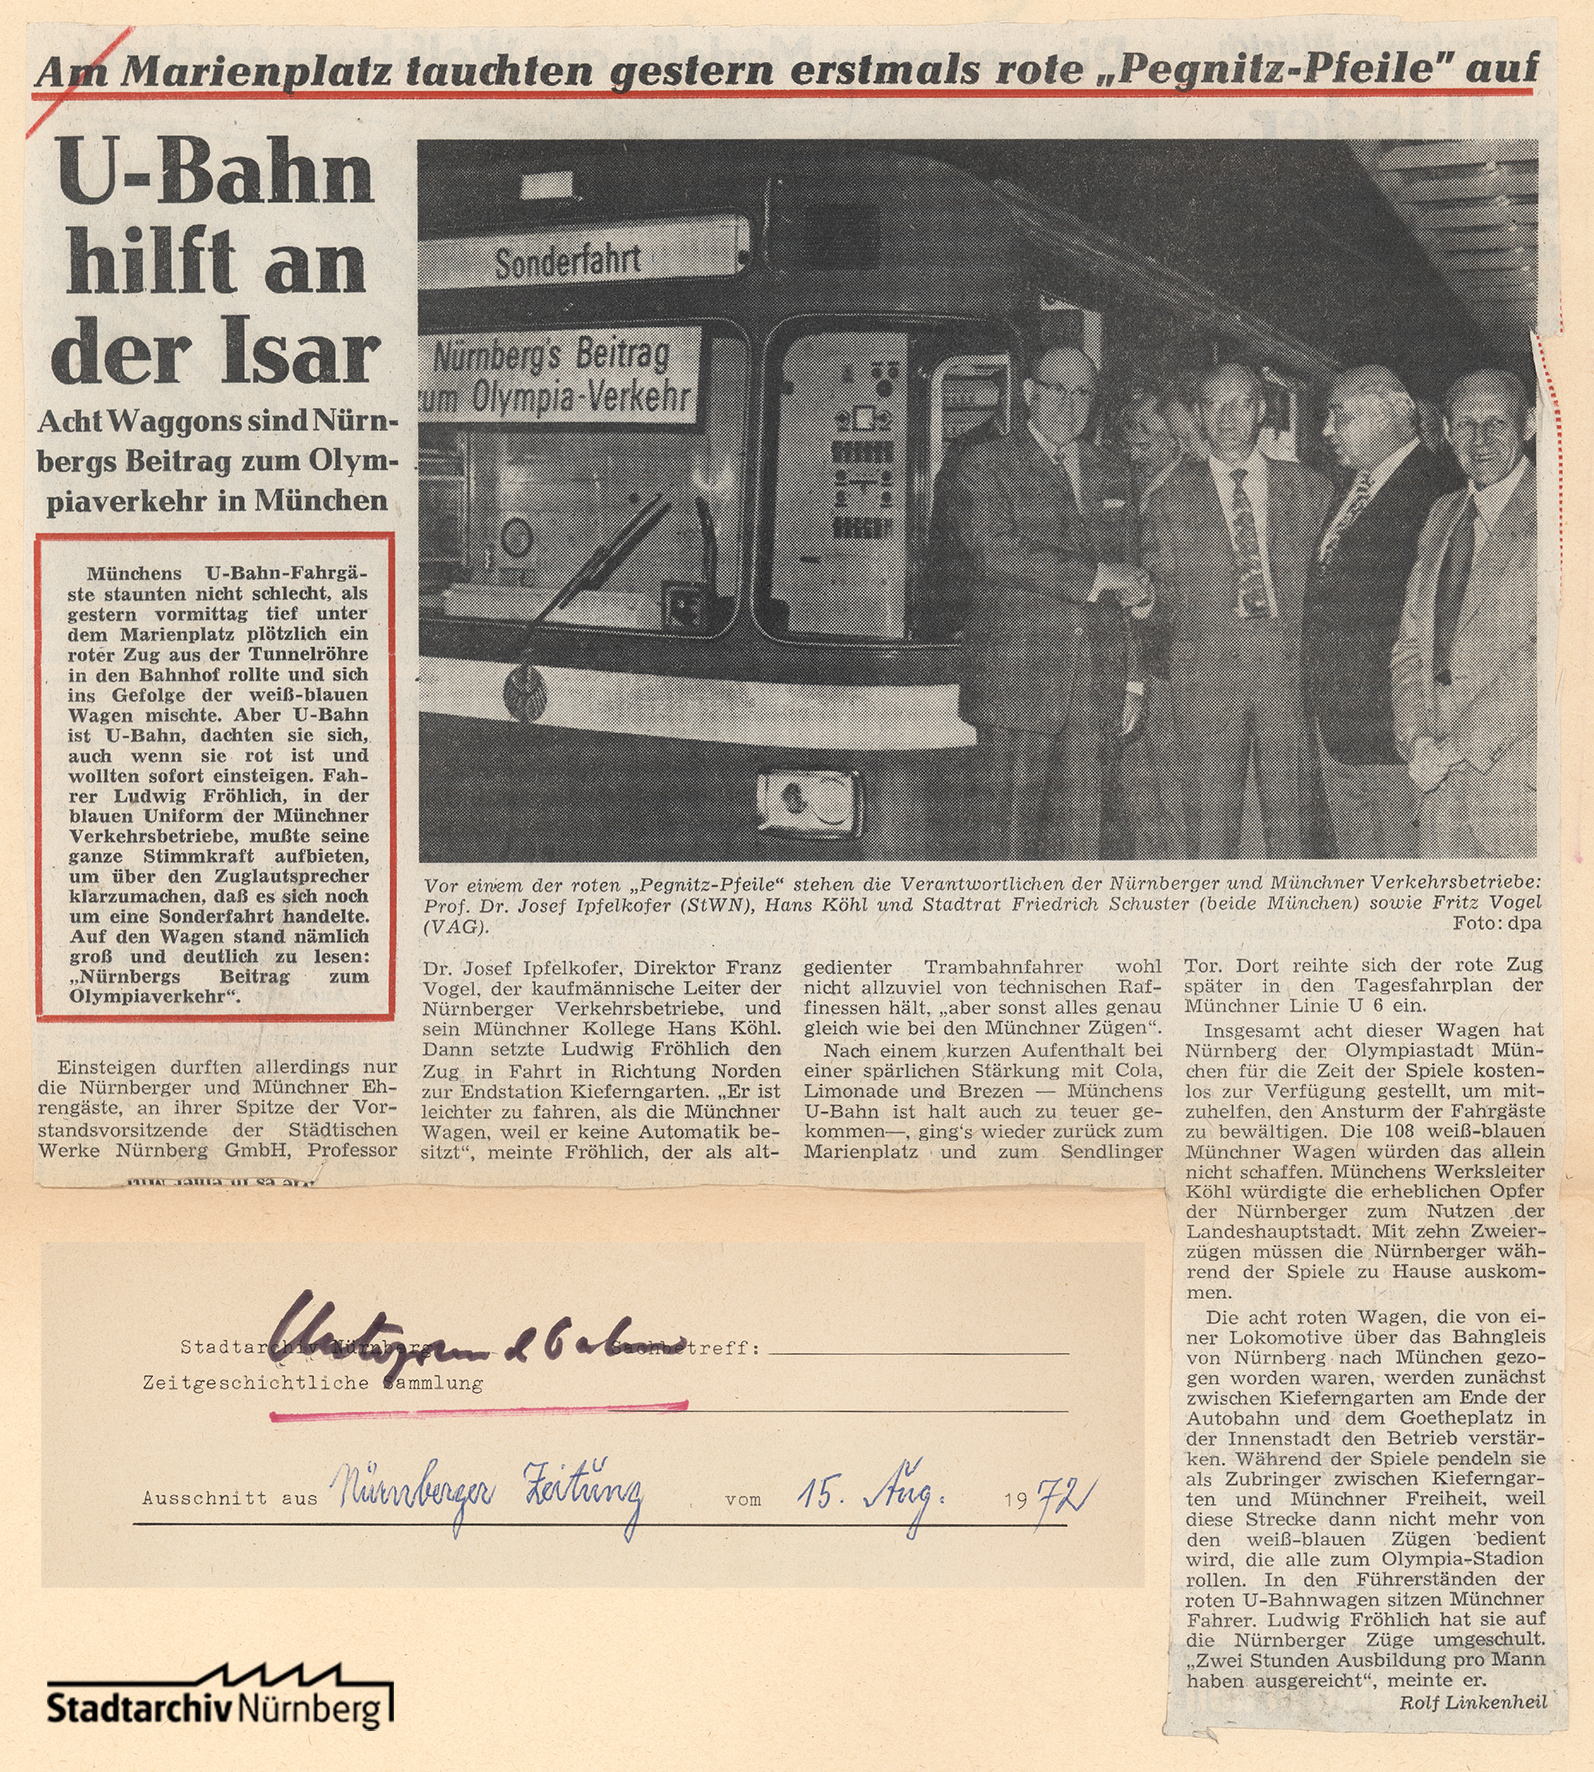 Zeitungsbericht über den Einsatz Nürnberger U-Bahnwaggons in München anlässlich der Olympiade 1972. Quelle: Stadtarchiv Nürnberg F 7/I Nr. 1139 